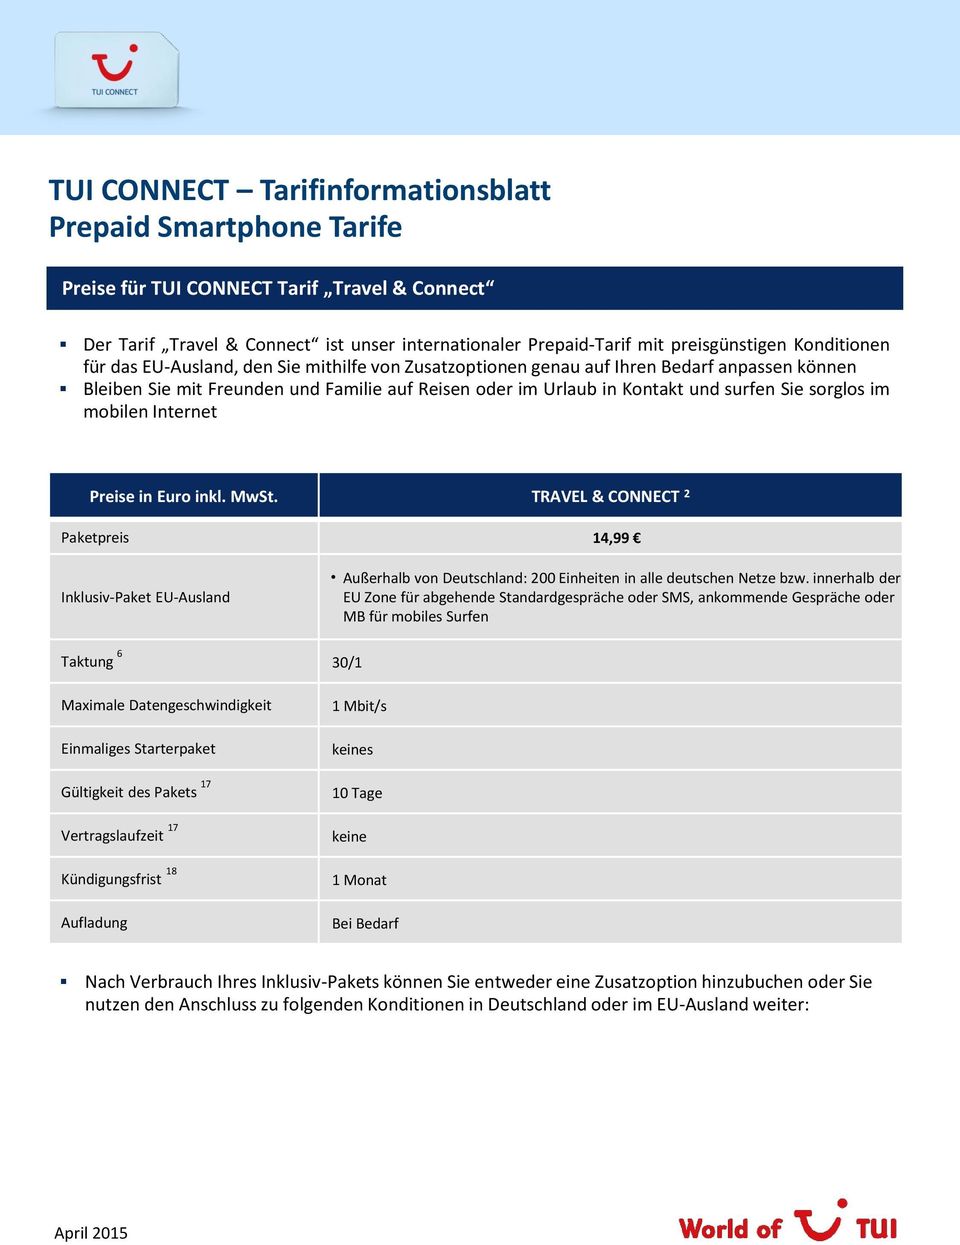 TRAVEL & CONNECT 2 Paketpreis 14,99 Inklusiv-Paket EU-Ausland Außerhalb von Deutschland: 200 Einheiten in alle deutschen Netze bzw.